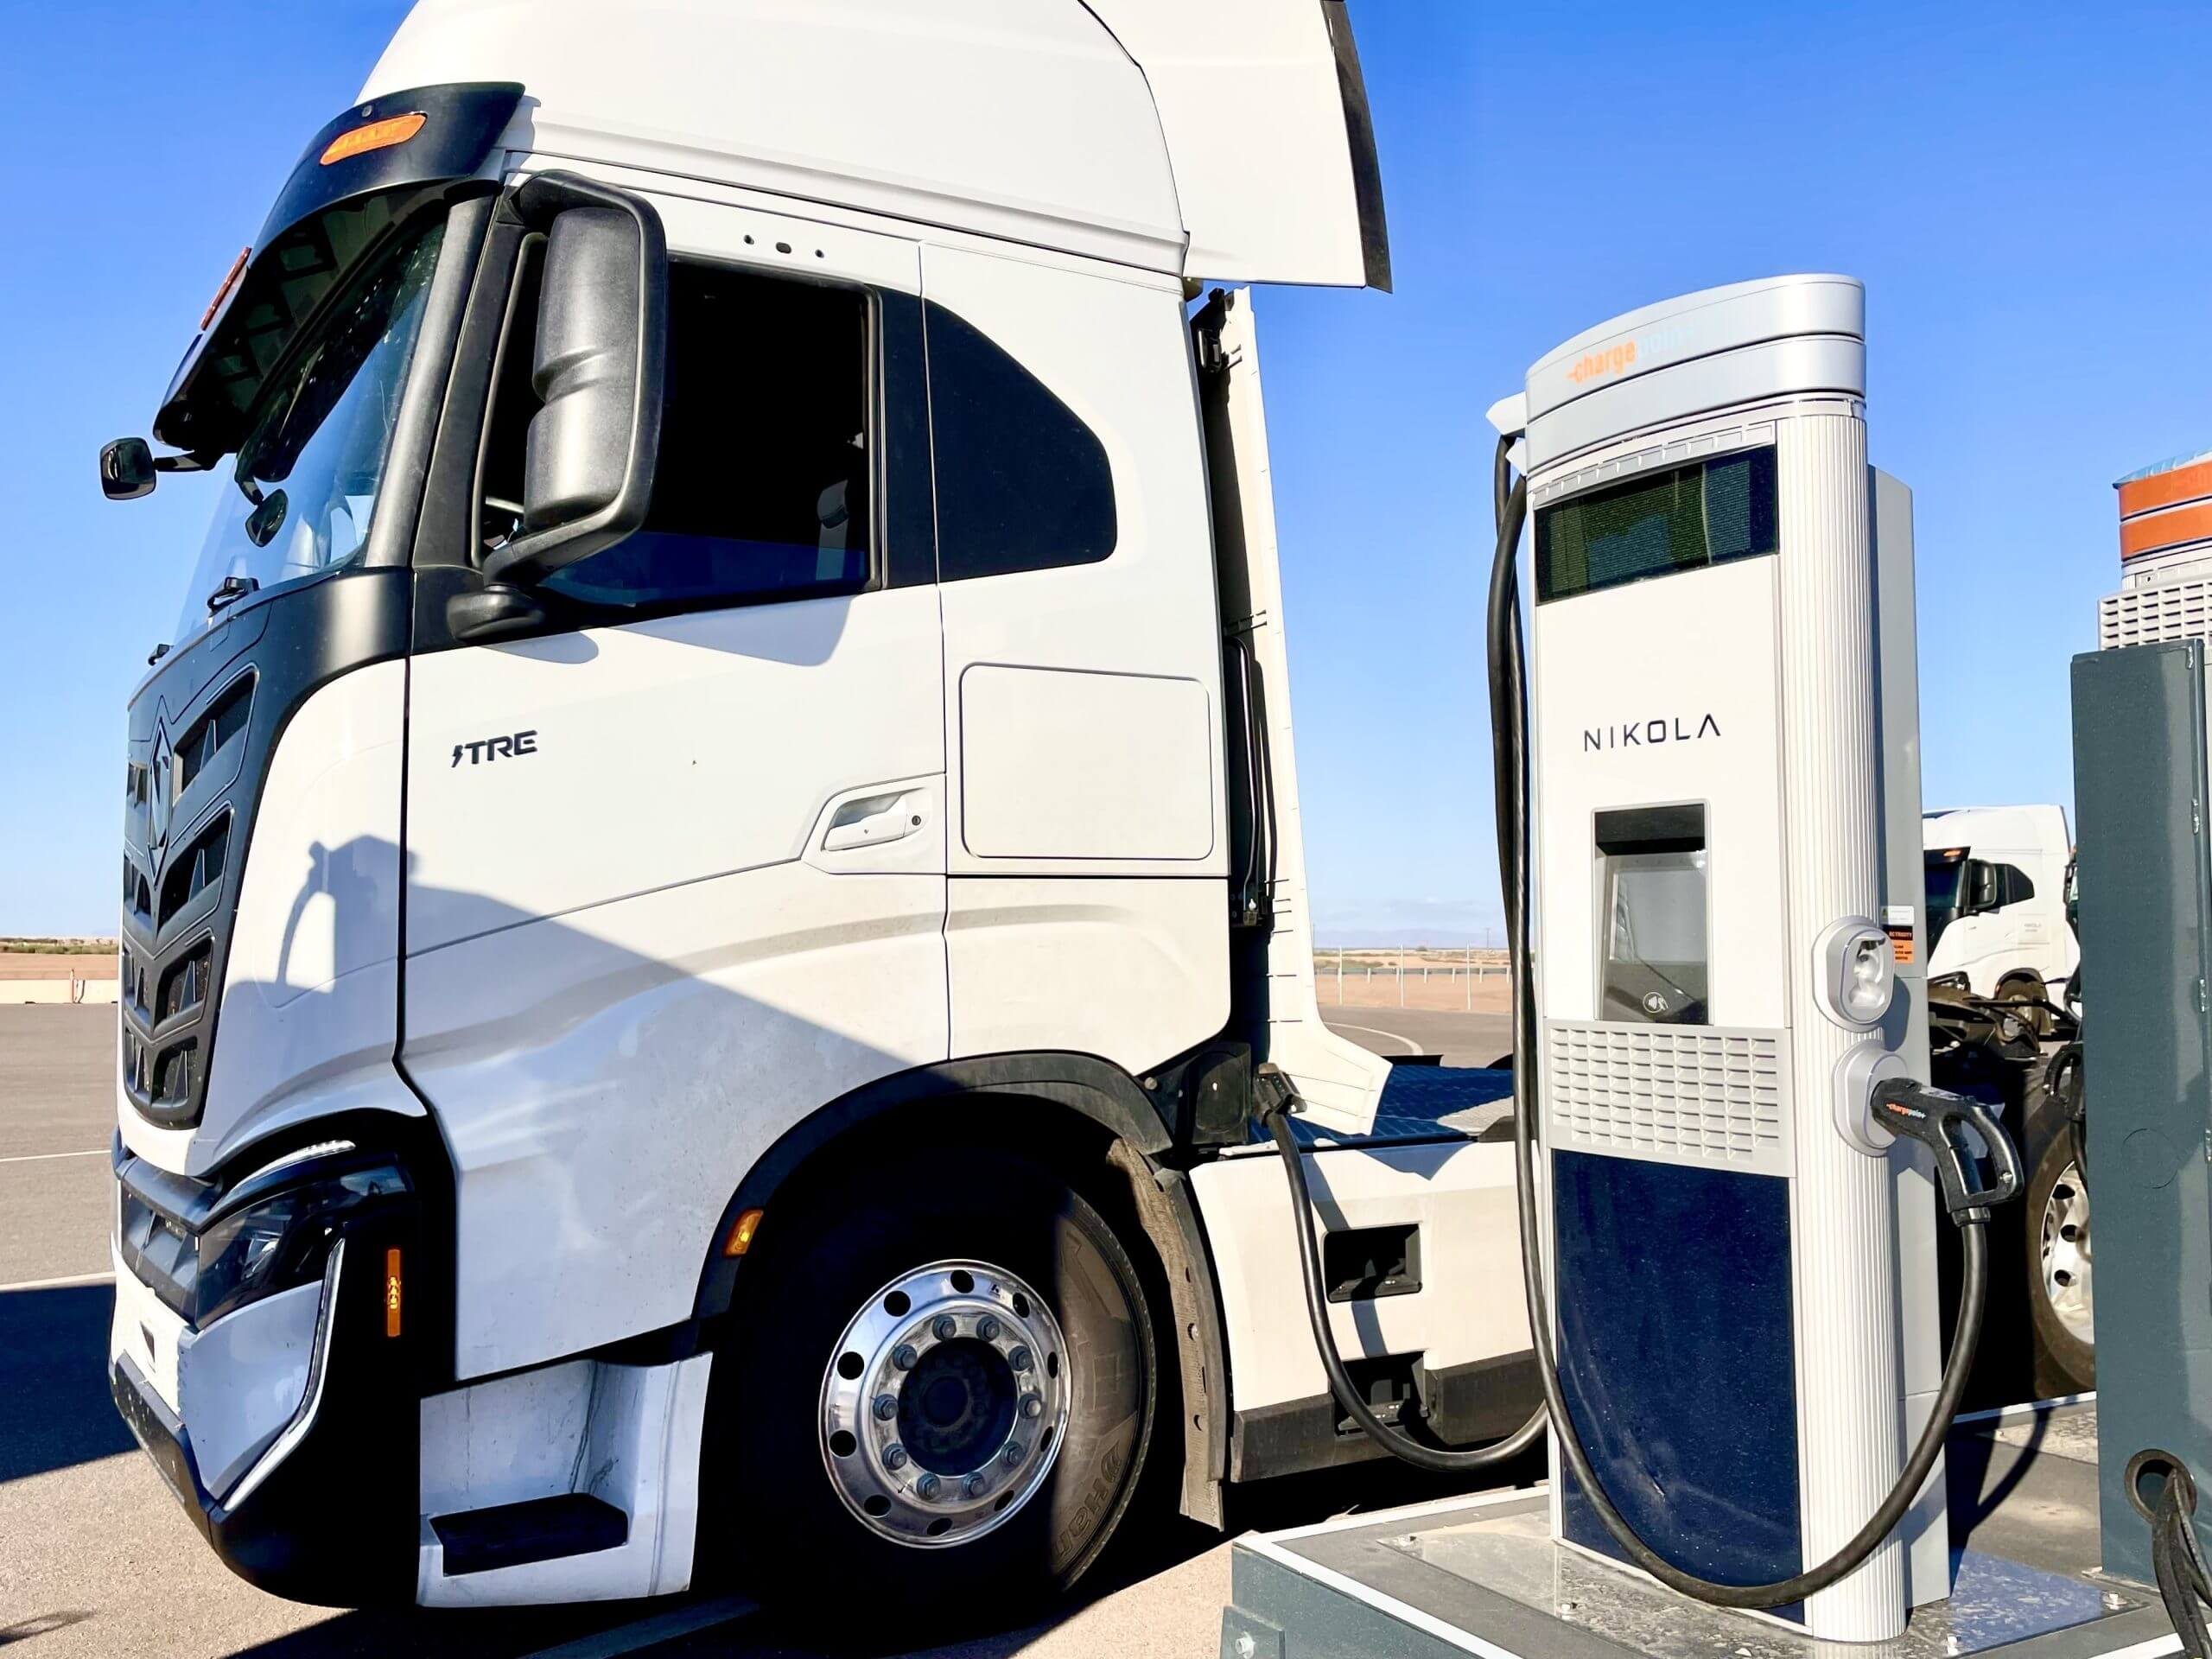 Nikola et ChargePoint étendent l’infrastructure de recharge des véhicules électriques aux États-Unis dans le cadre d’un partenariat stratégique